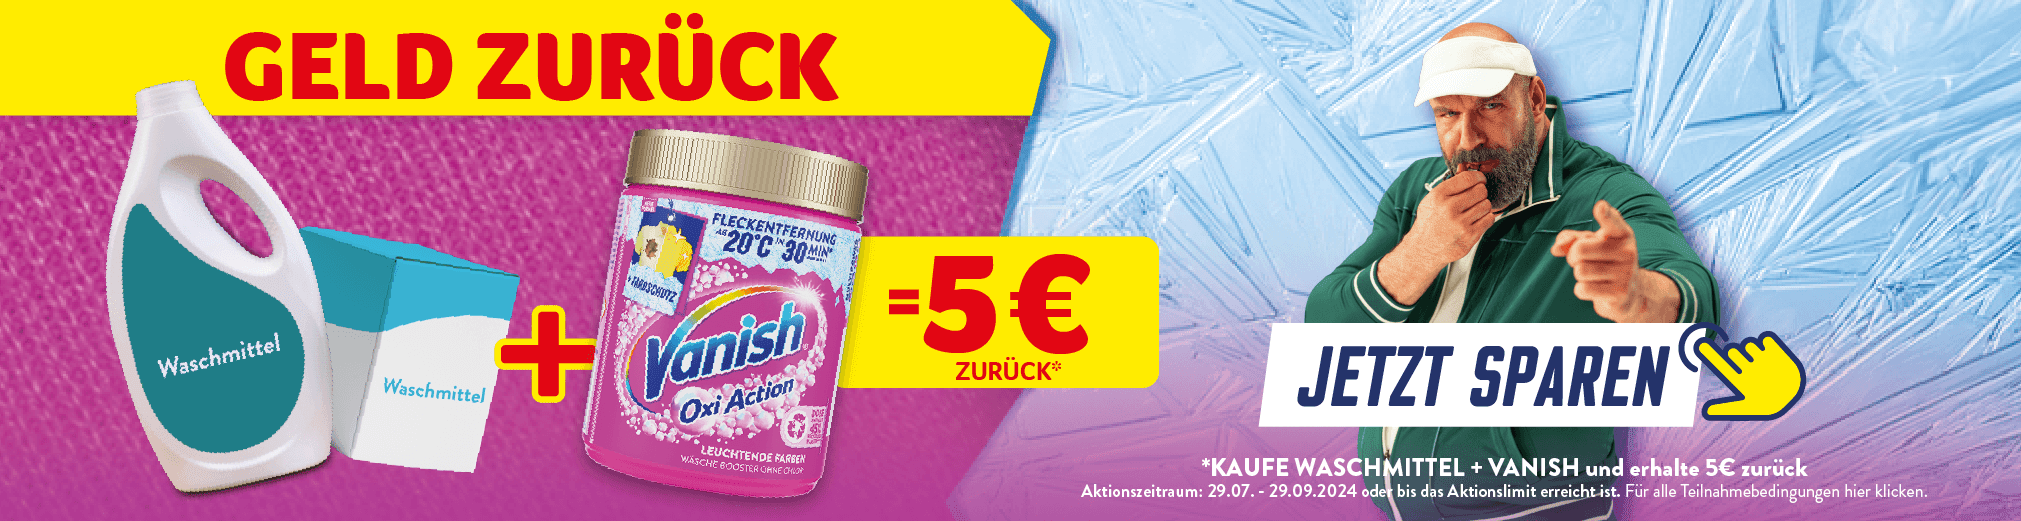 Vanish 5€ zurück Aktion. Kaufe ein Waschmittel + Vanish und erhalte 5€ zurück. Jetzt sparen. Hier klicken.